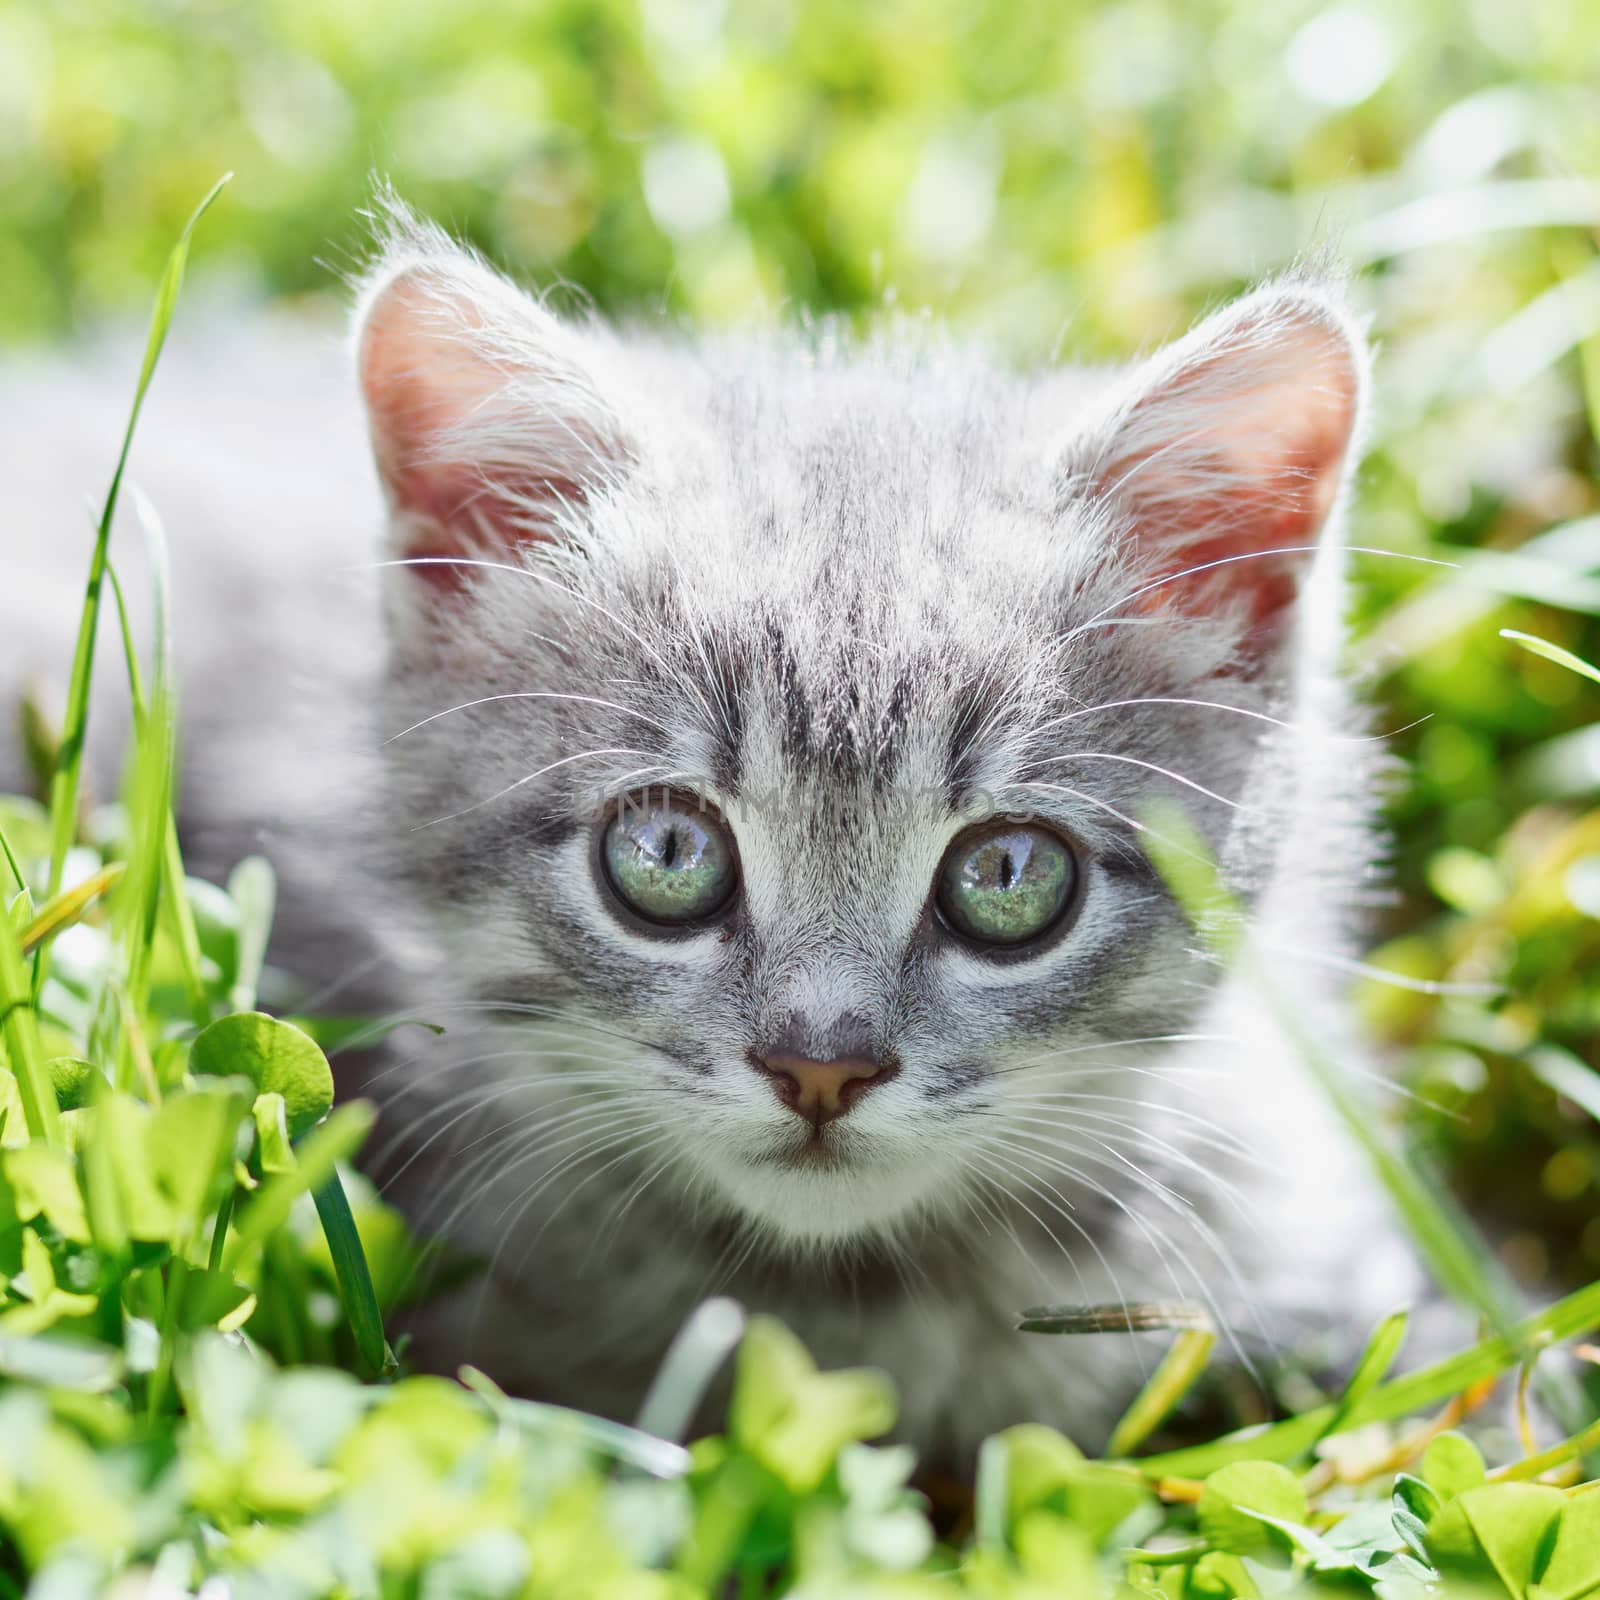 Little kitten in the grass by serkucher